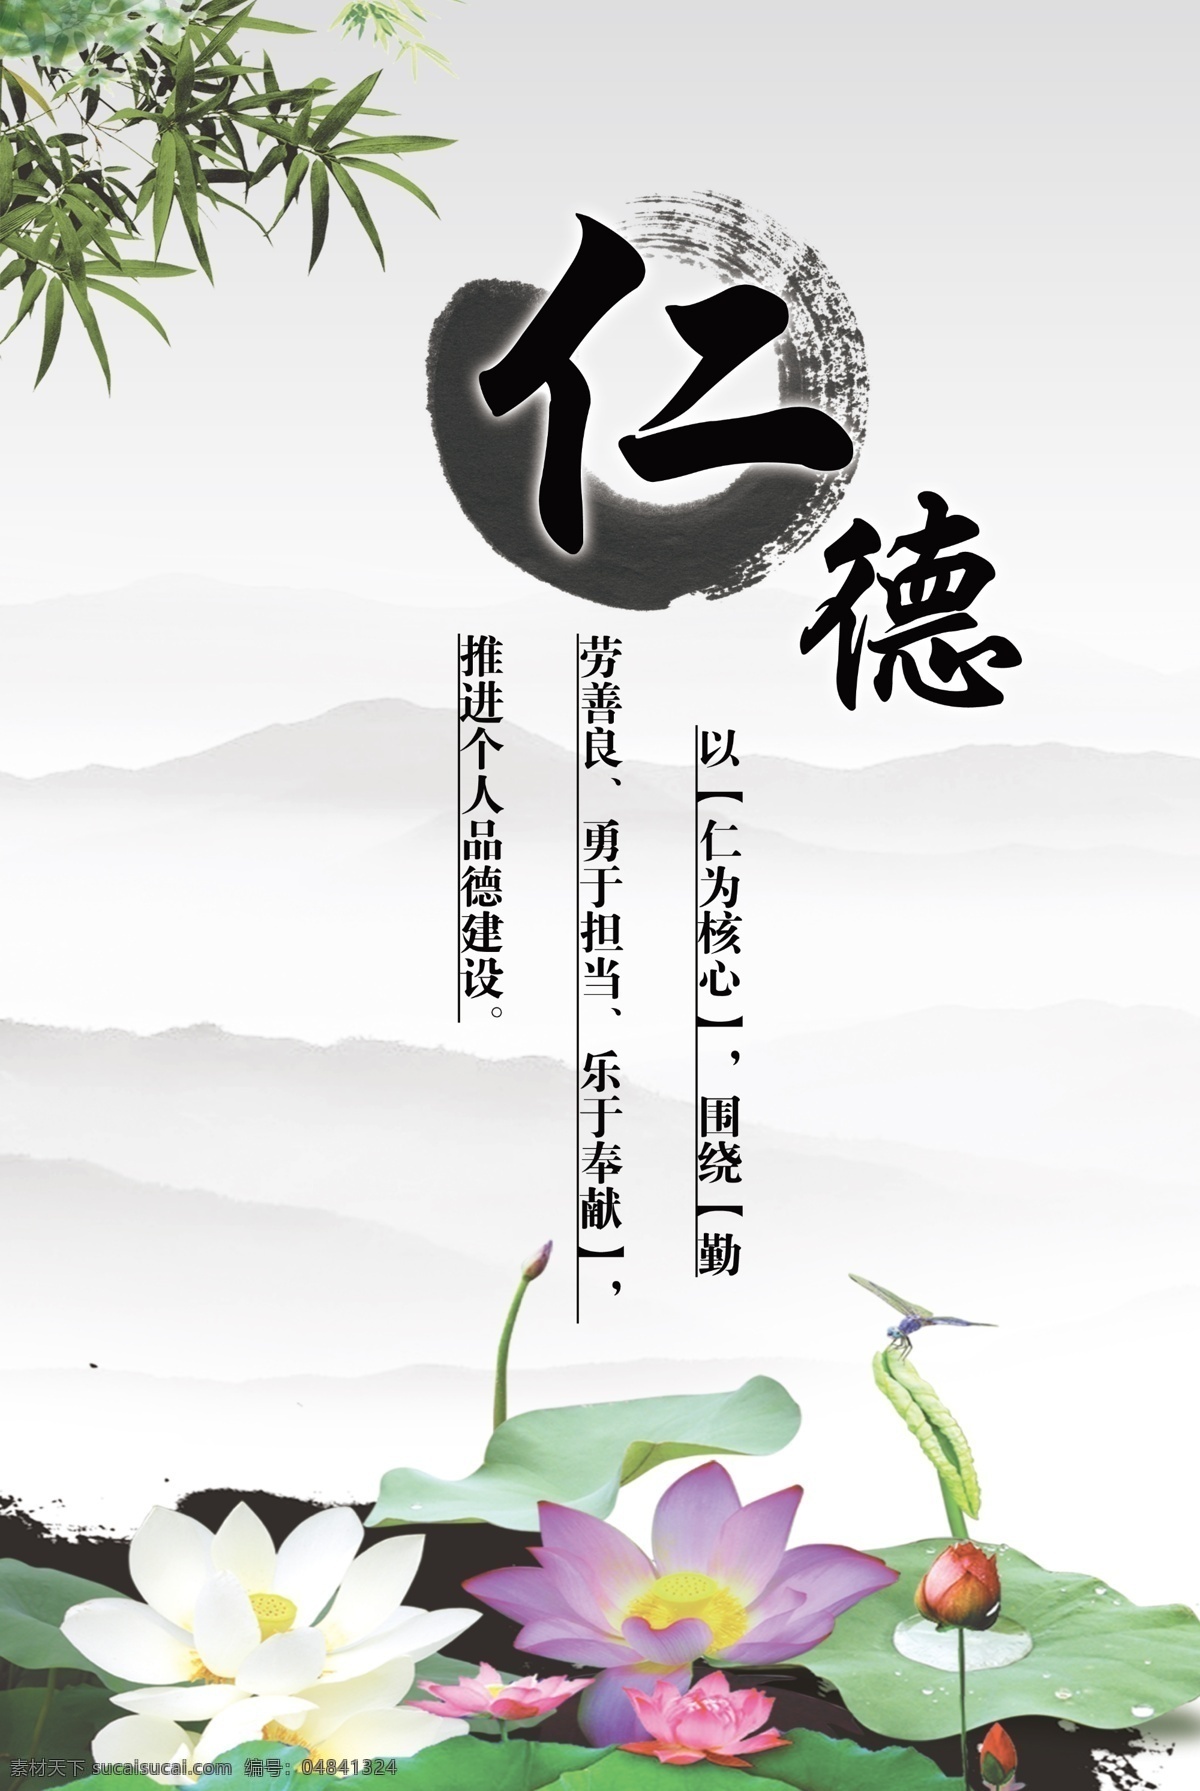 中国 风 励志 标语 展板 中国风 水墨 谦虚 博爱 宽容 自强 荷花 山水 幽静 展板模板 白色